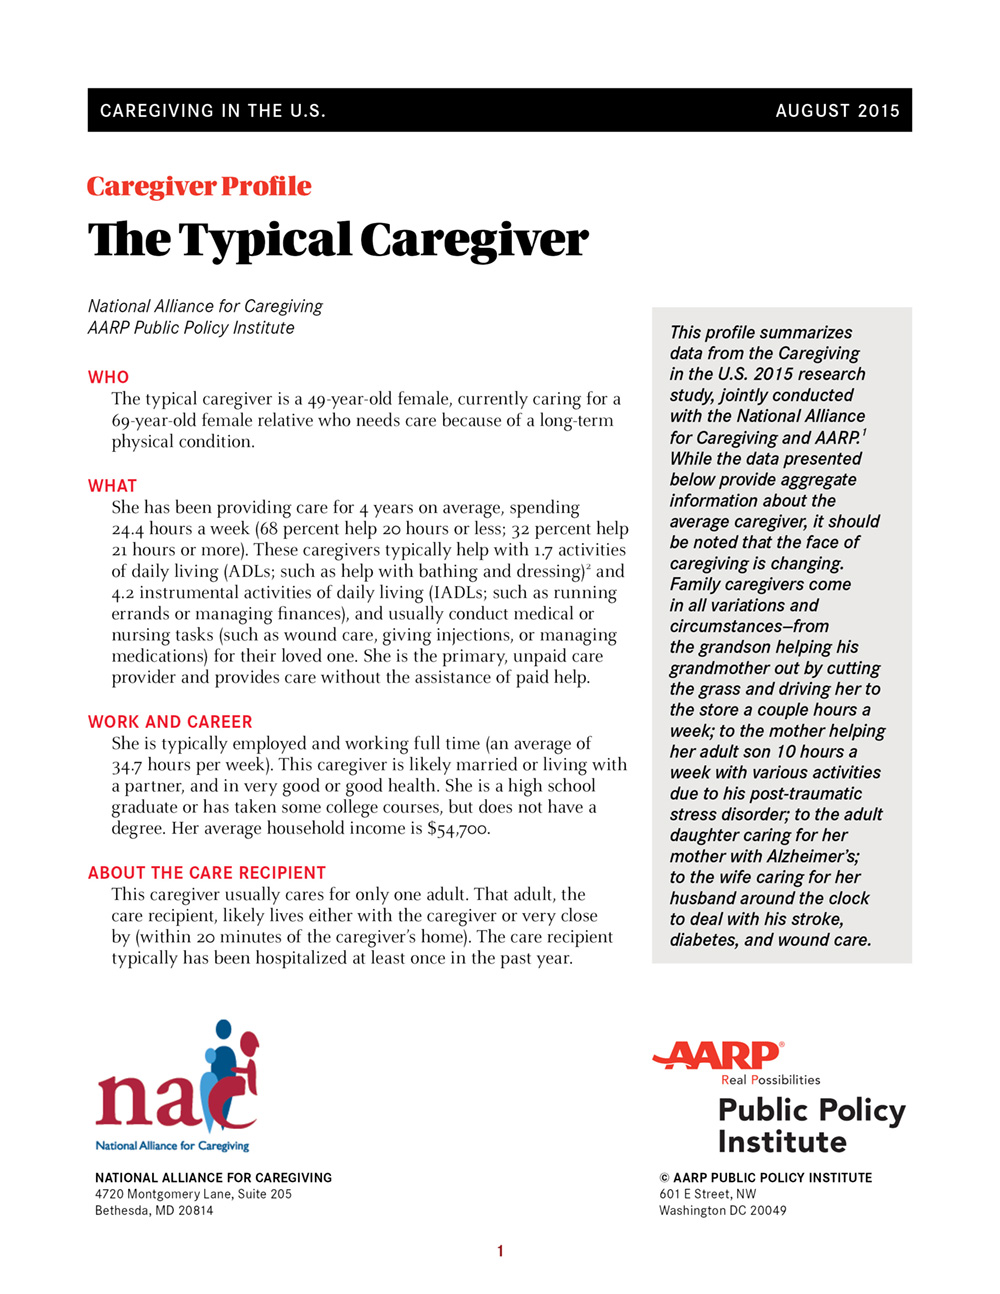 AARP-835 AARP Caregiving in the US Infographics